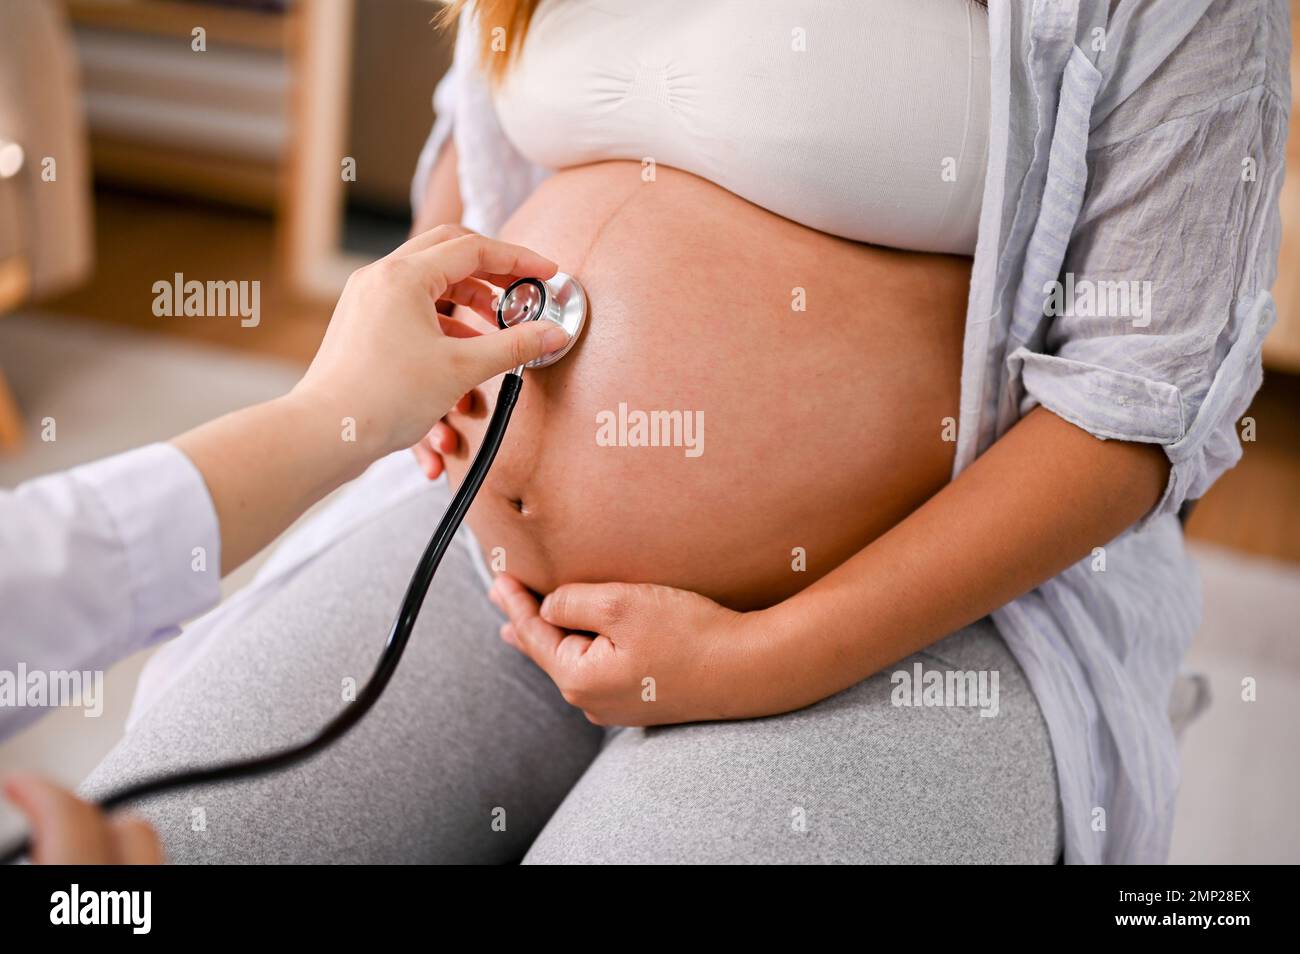 Ein professioneller Arzt, der den Herzschlag eines Babys im Bauch einer  schwangeren Frau mit Stethoskop hört. Arztliches Check-up-Konzept.  Zugeschnittenes Bild Stockfotografie - Alamy